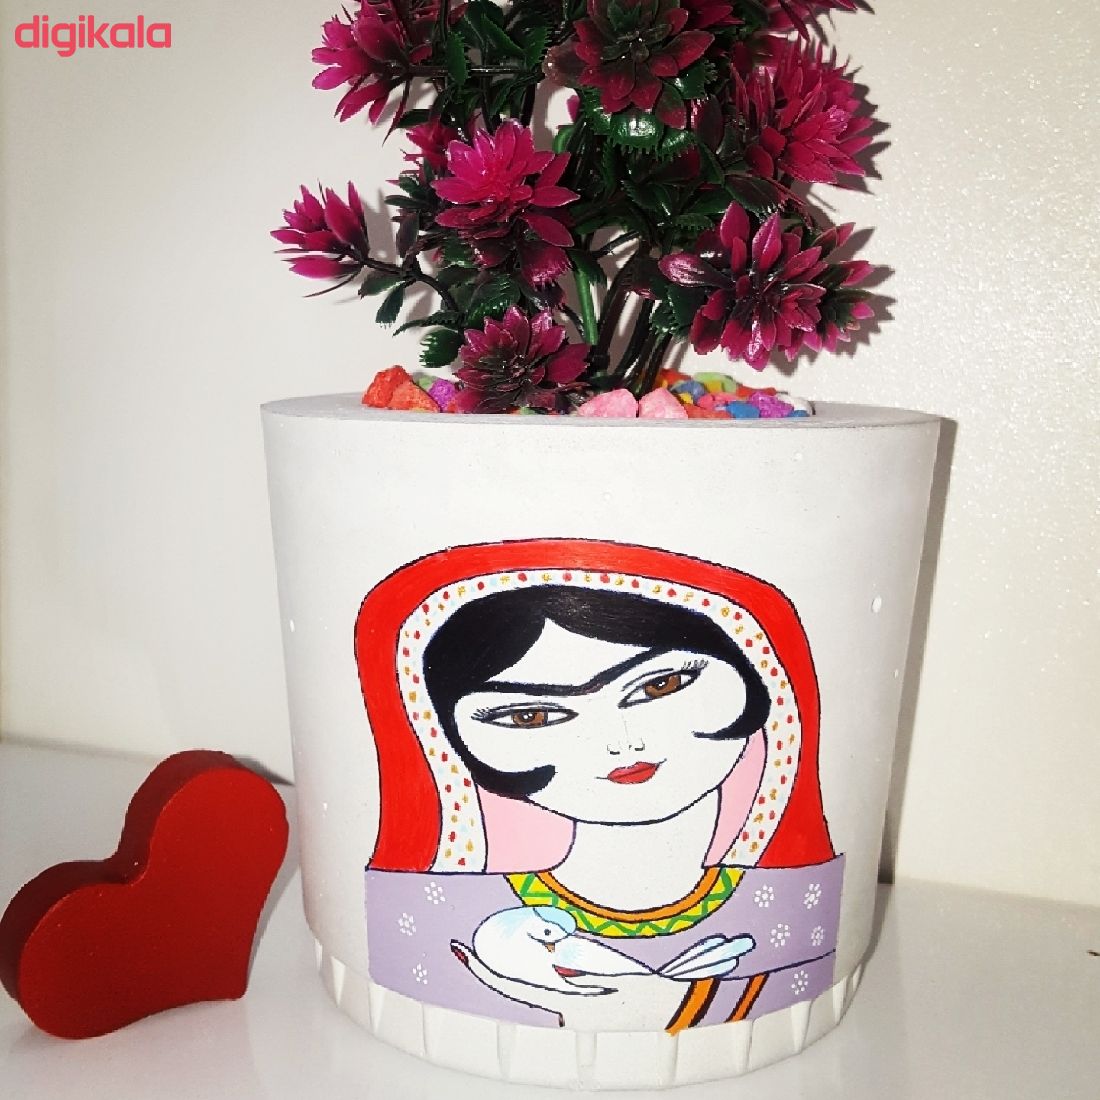  خرید اینترنتی با تخفیف ویژه گلدان بتنی طرح دختر A